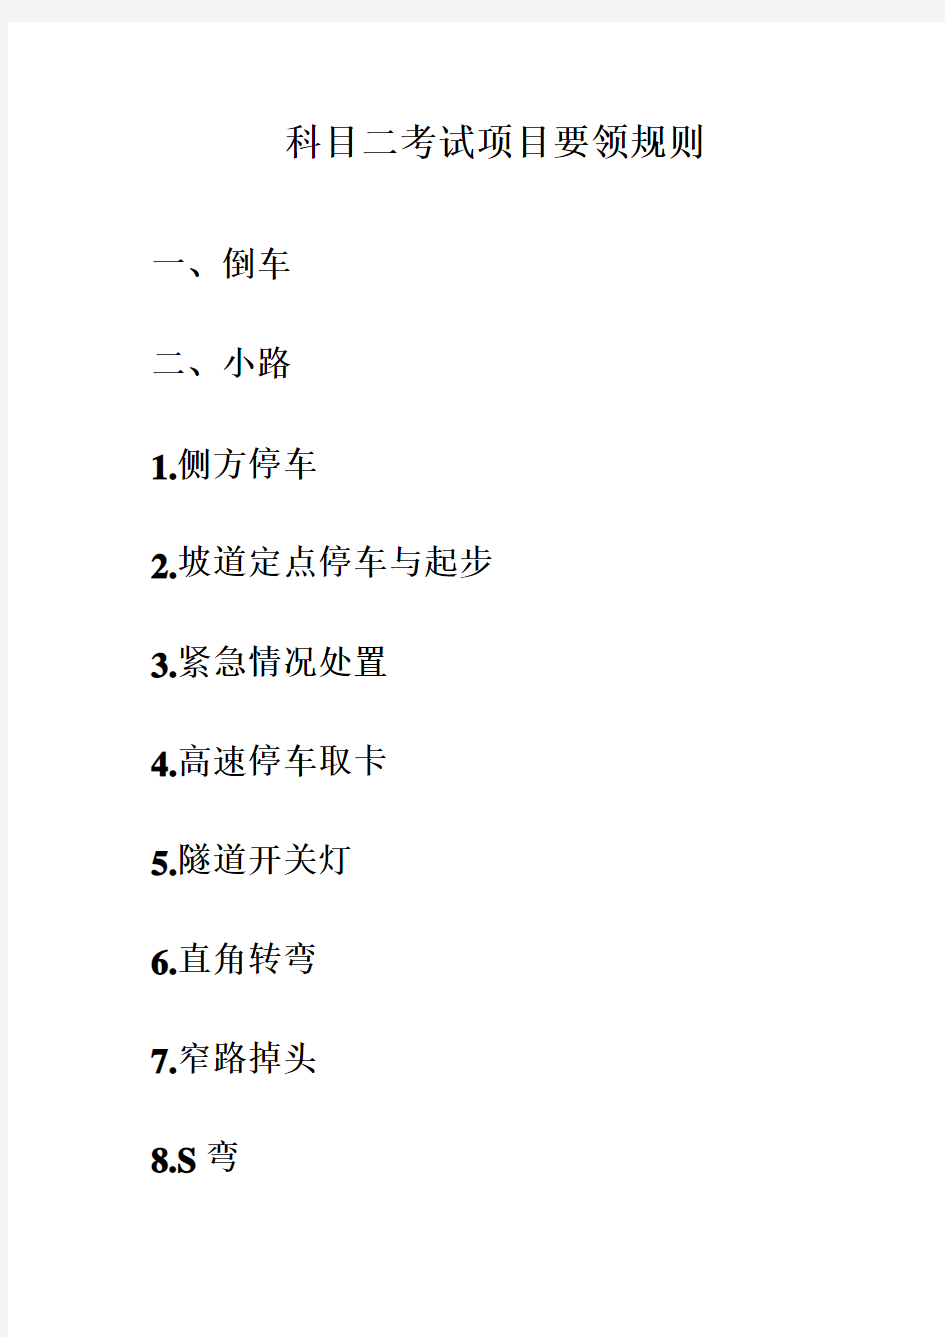 上海驾考科目二小路考试要领规则